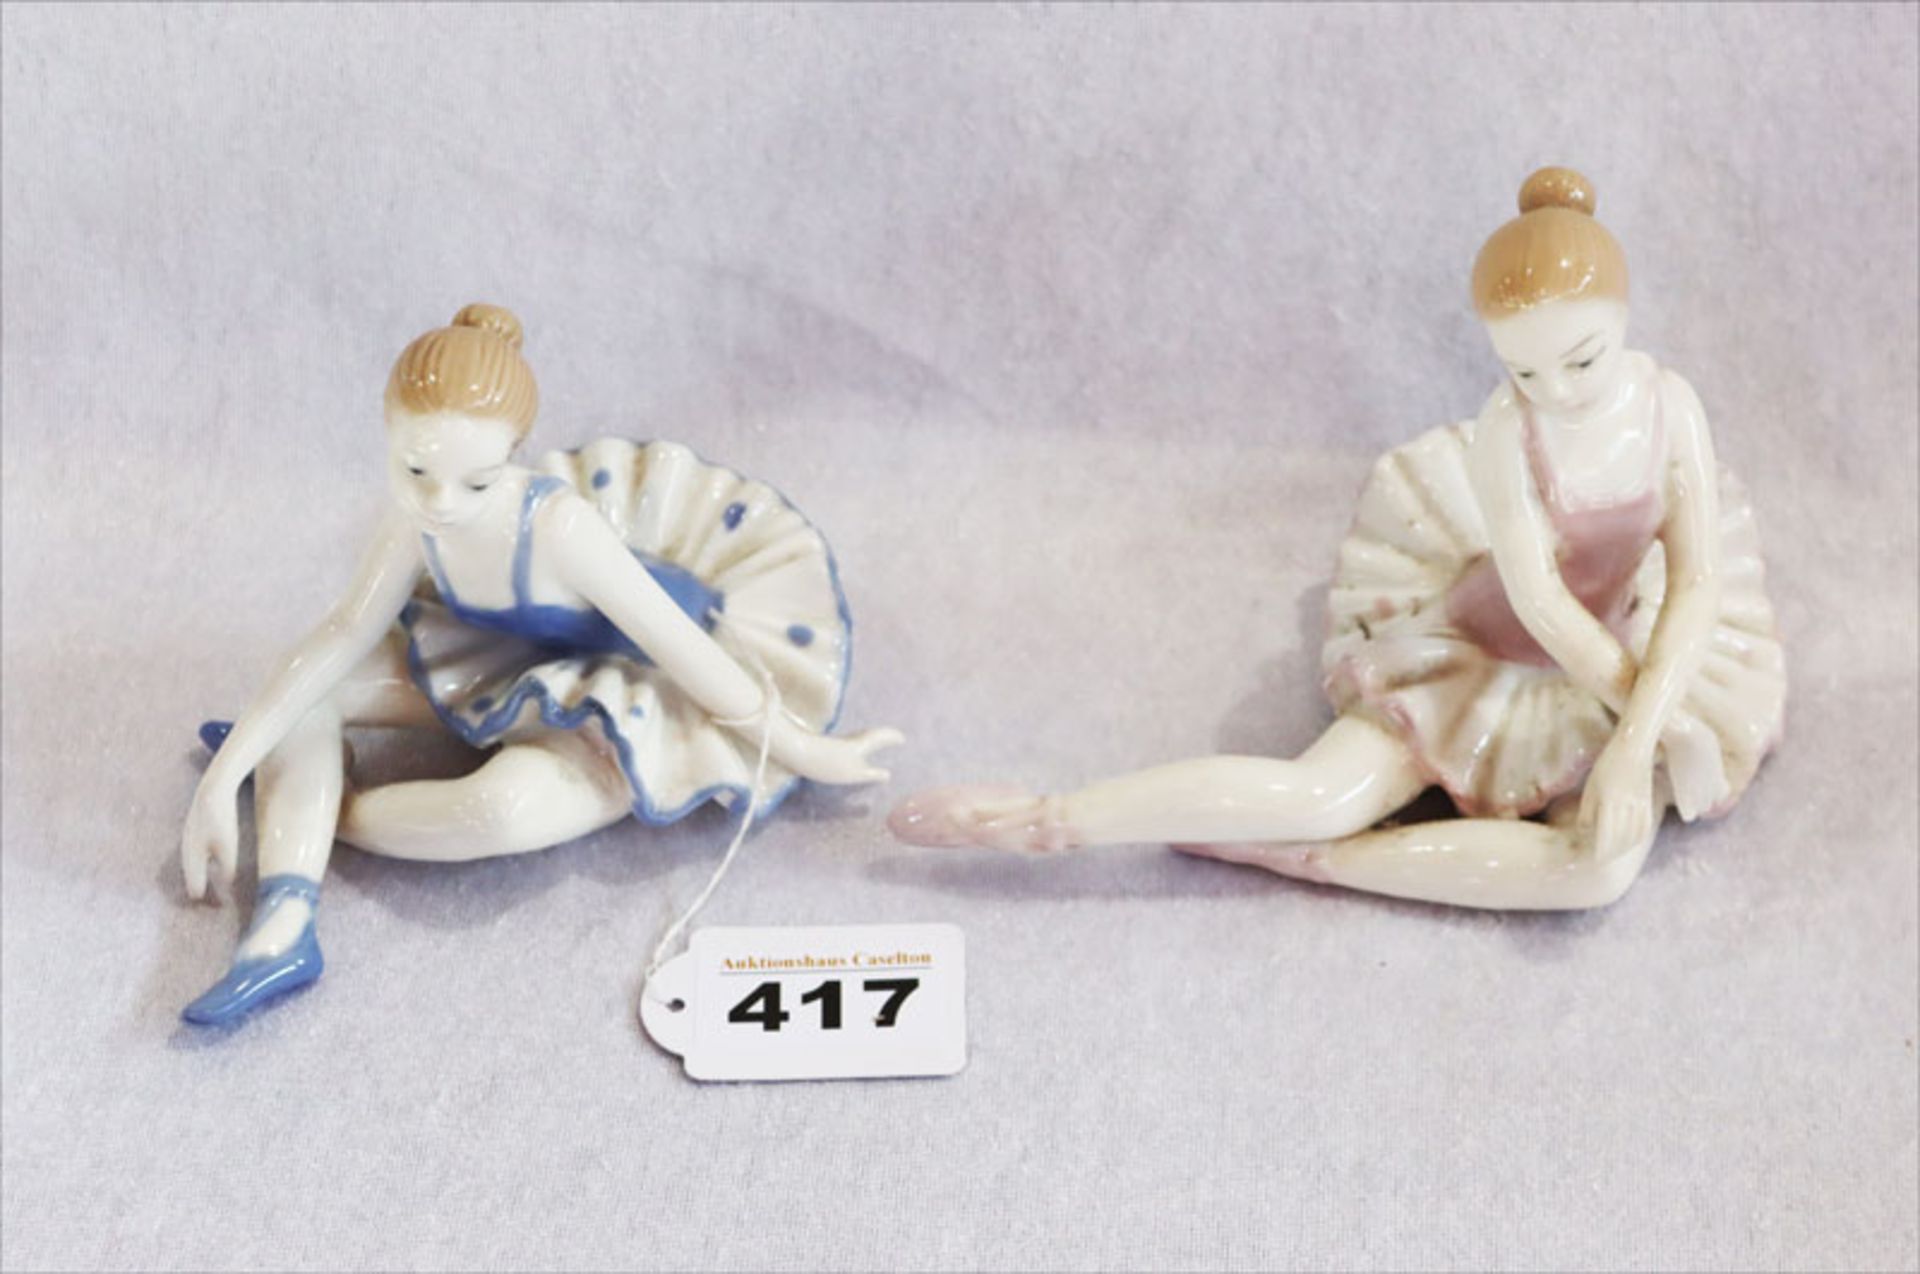 2 Porzellanfiguren 'Ballarinas', glasiert, H 10/11 cm